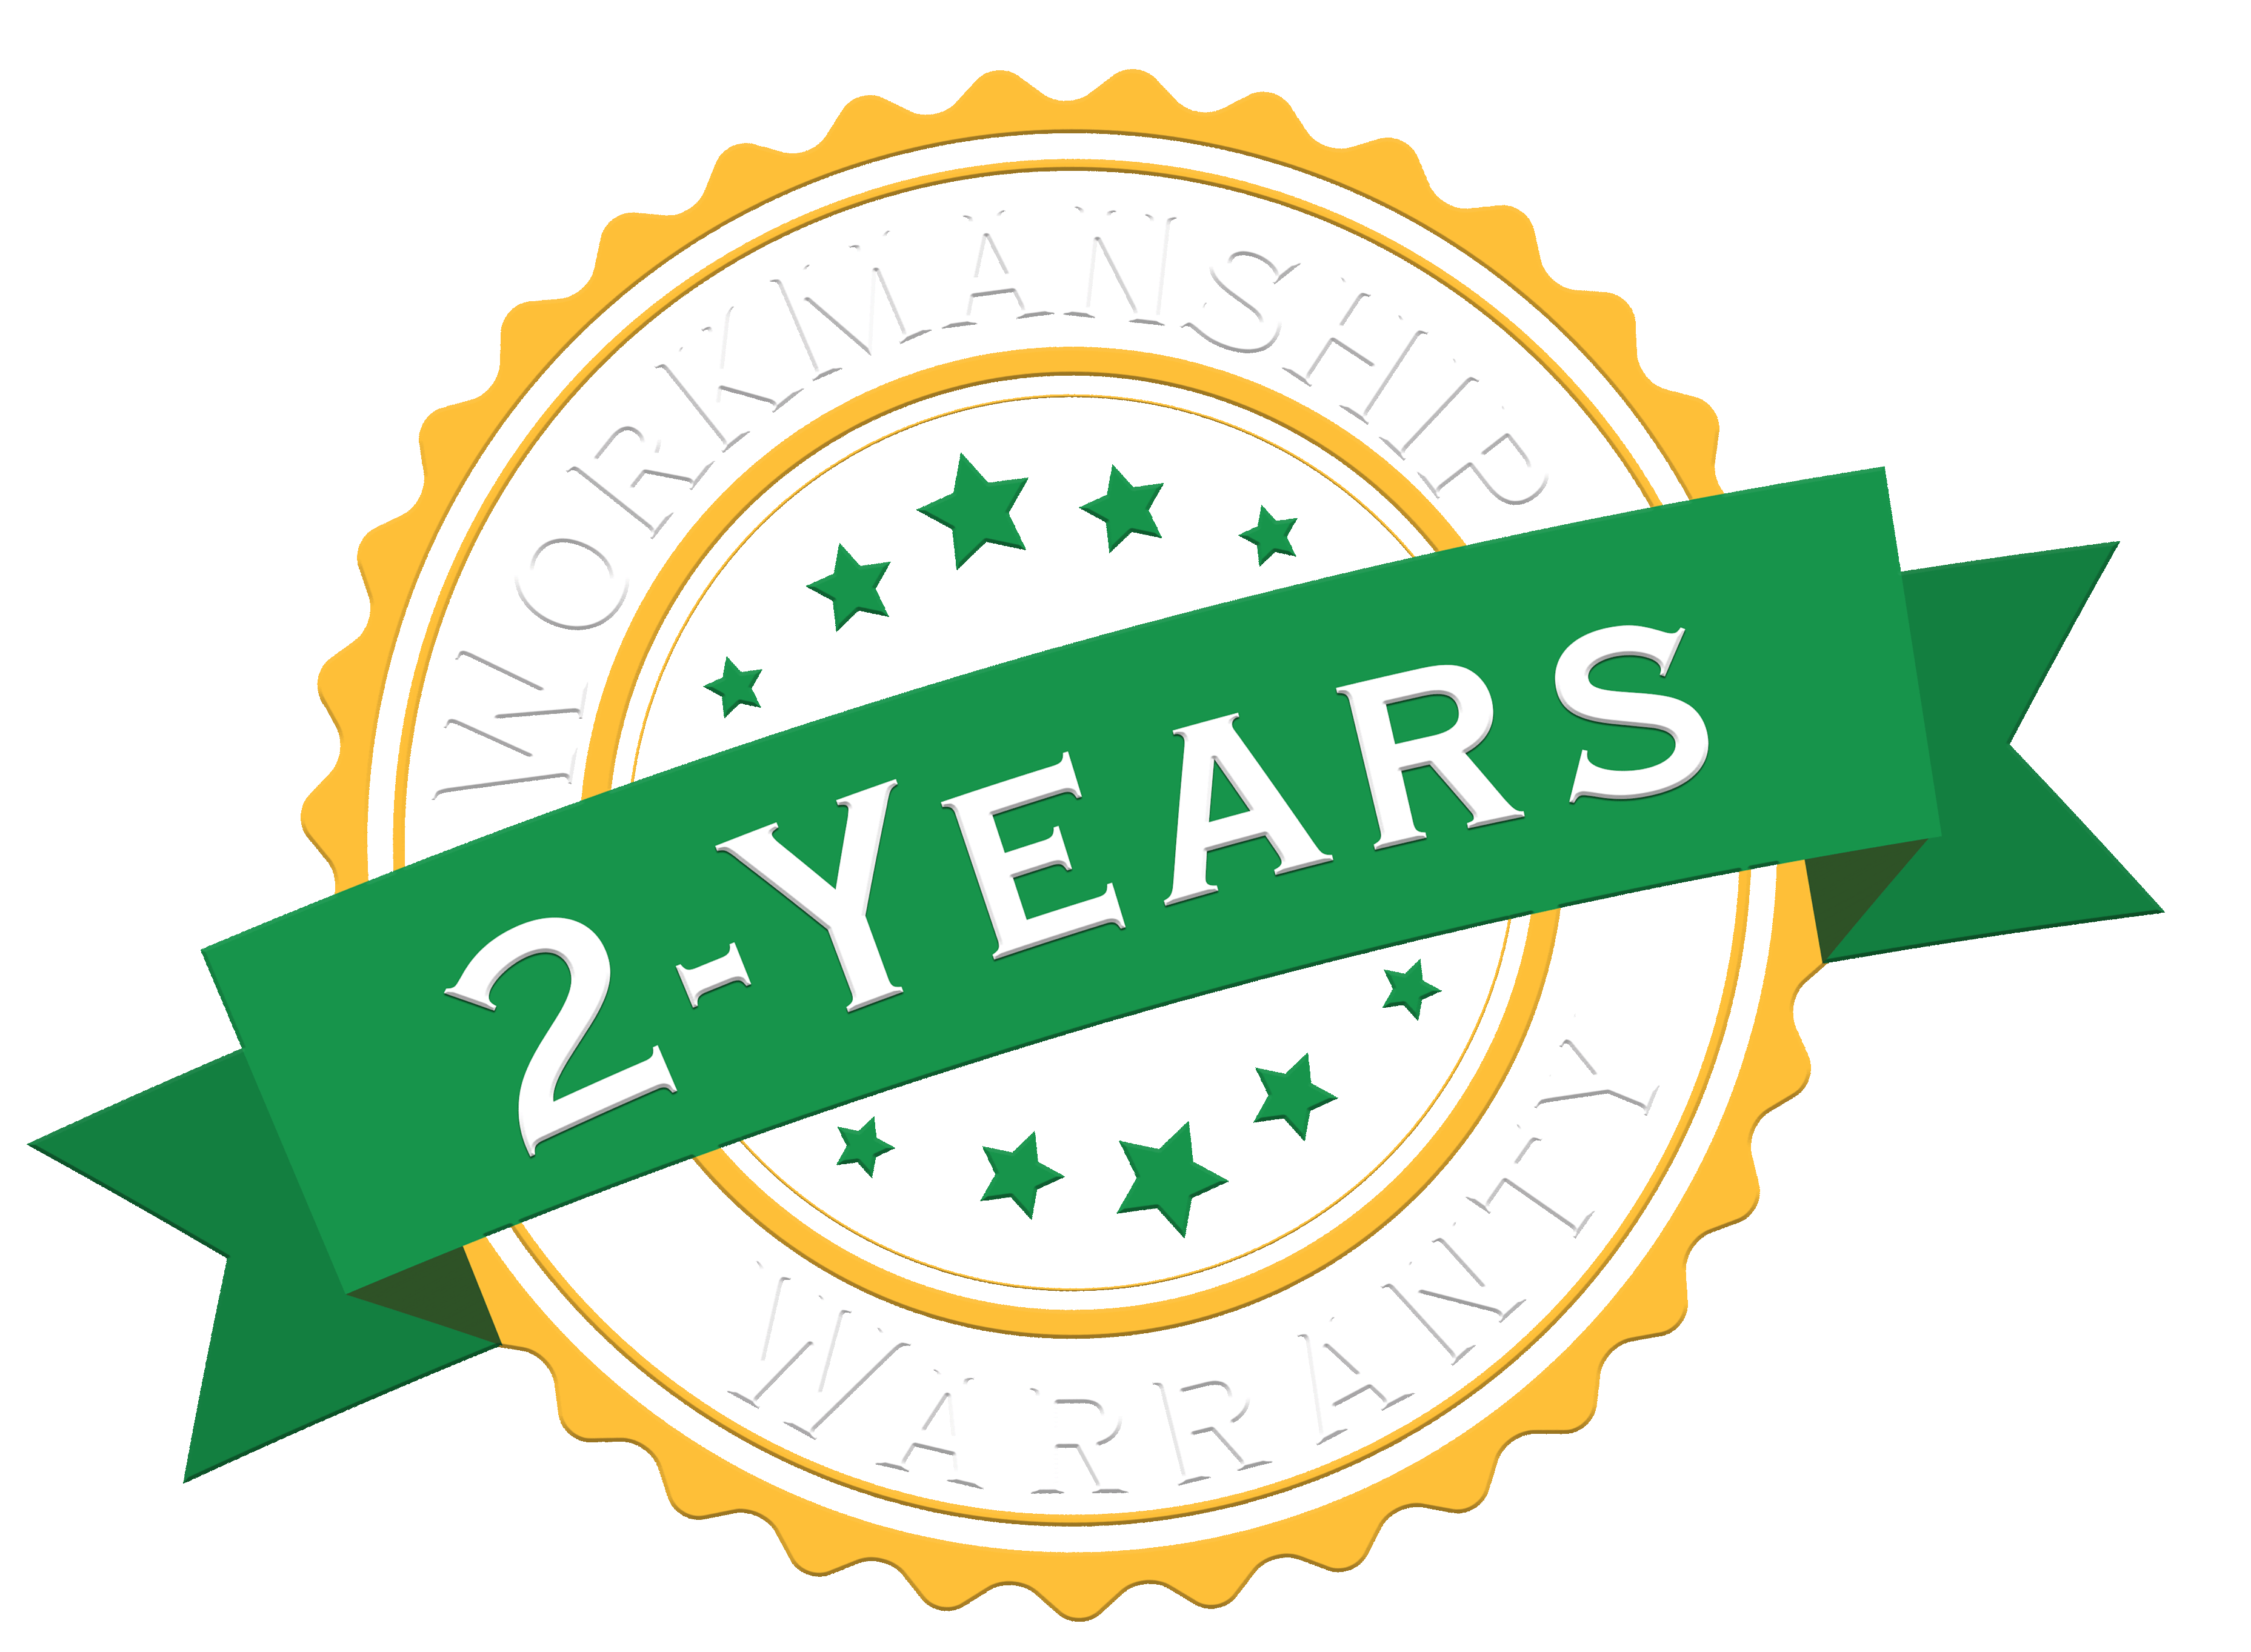 2 year workmanship warranty